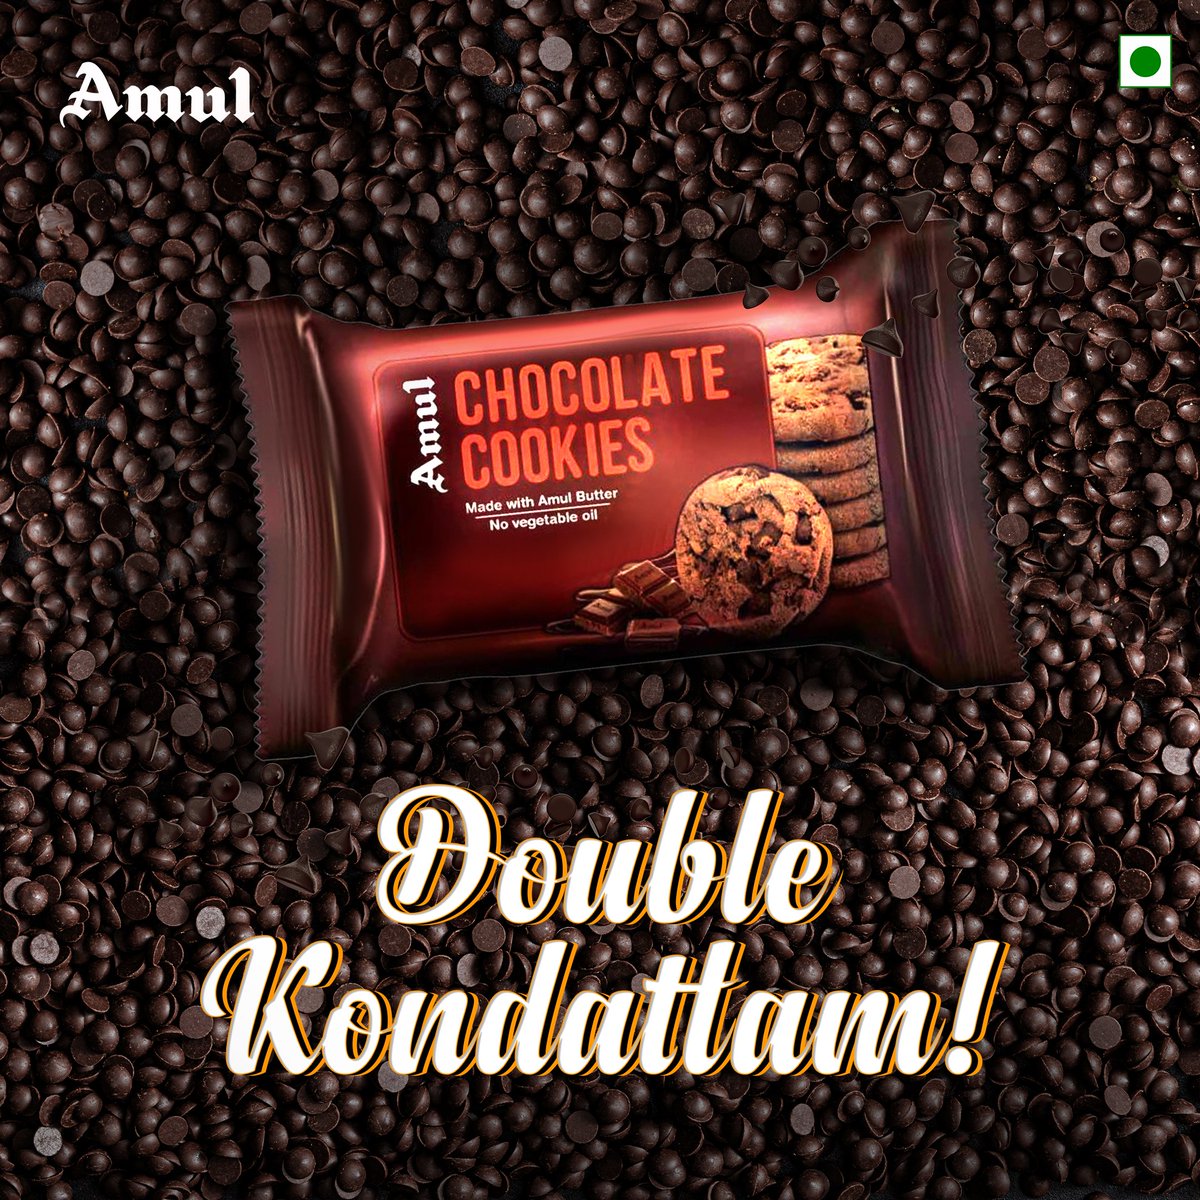 Neraya cookies, neraya chocolate! 😋 #Amul #அமுல் #AmulInTn #AmulGoodness #AmulProducts #amultamilnadu #amulchocolatecookies #amulcookies #amulbuttercookies #chocolate #chocolatecookies